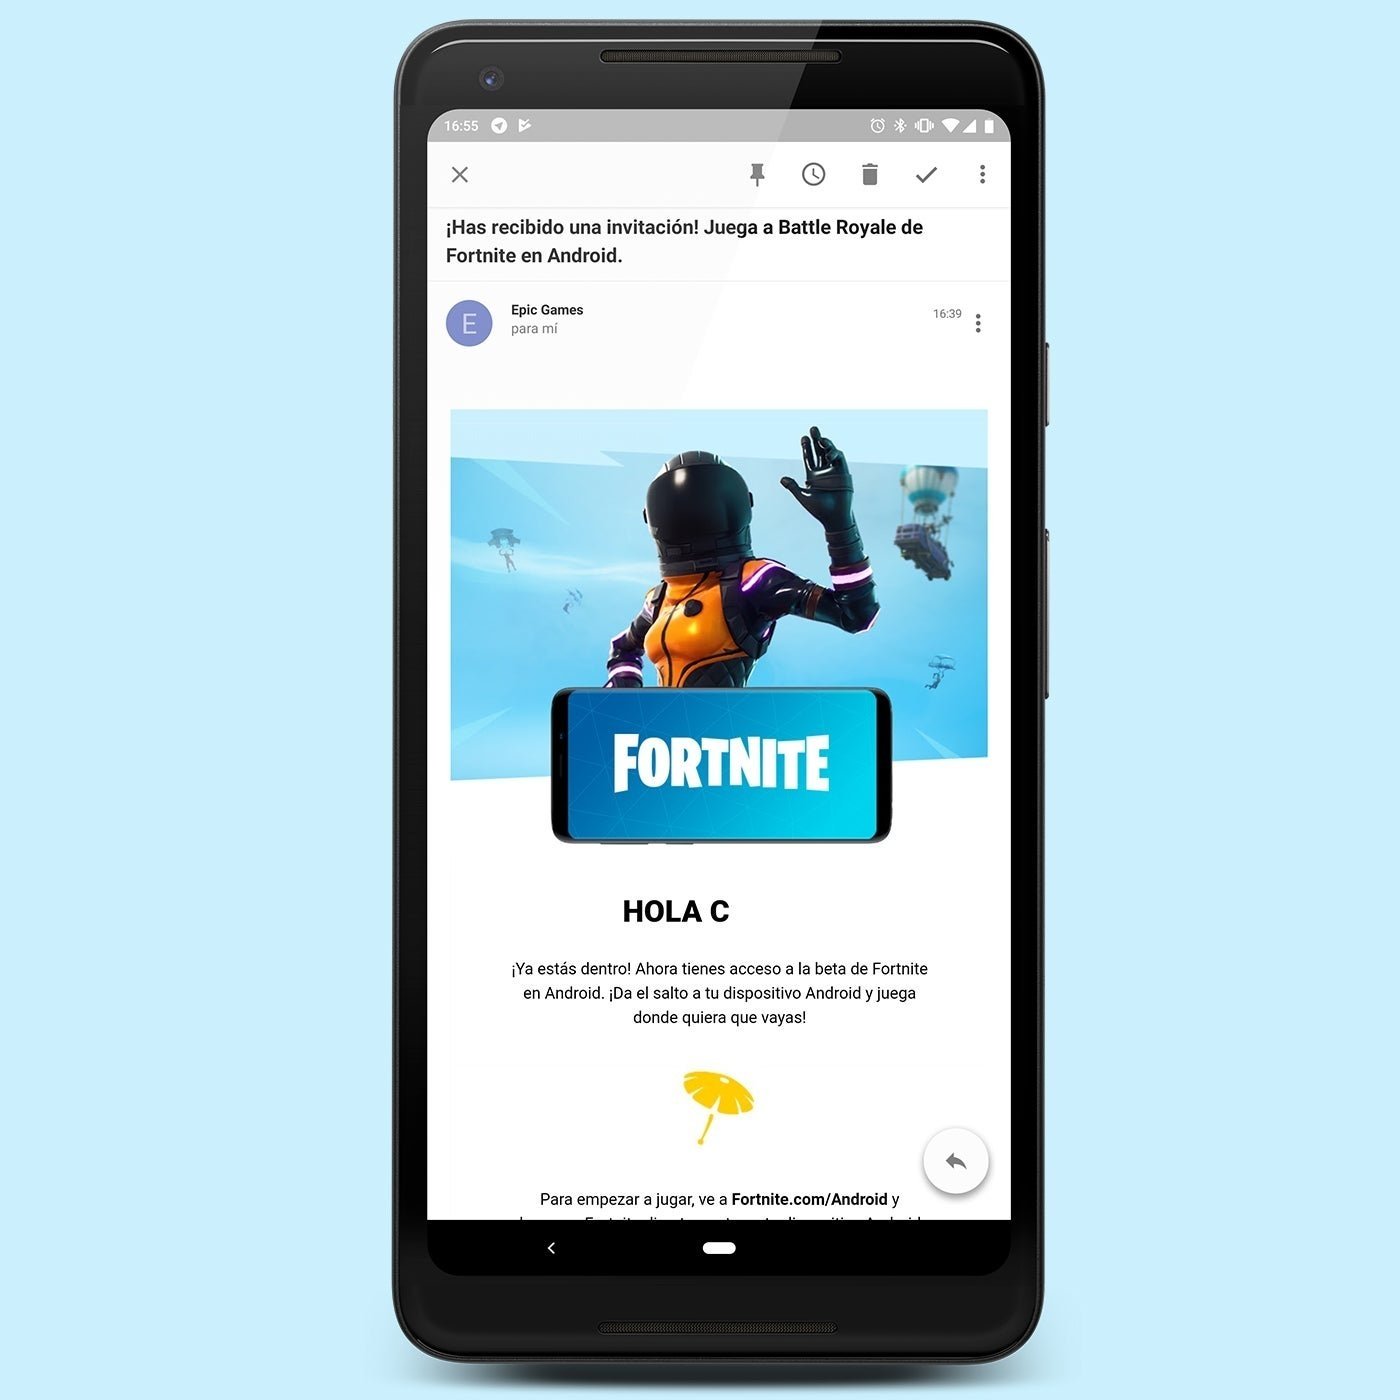 Fortnite para Android, pronto disponible para todos: llegan las primeras invitaciones